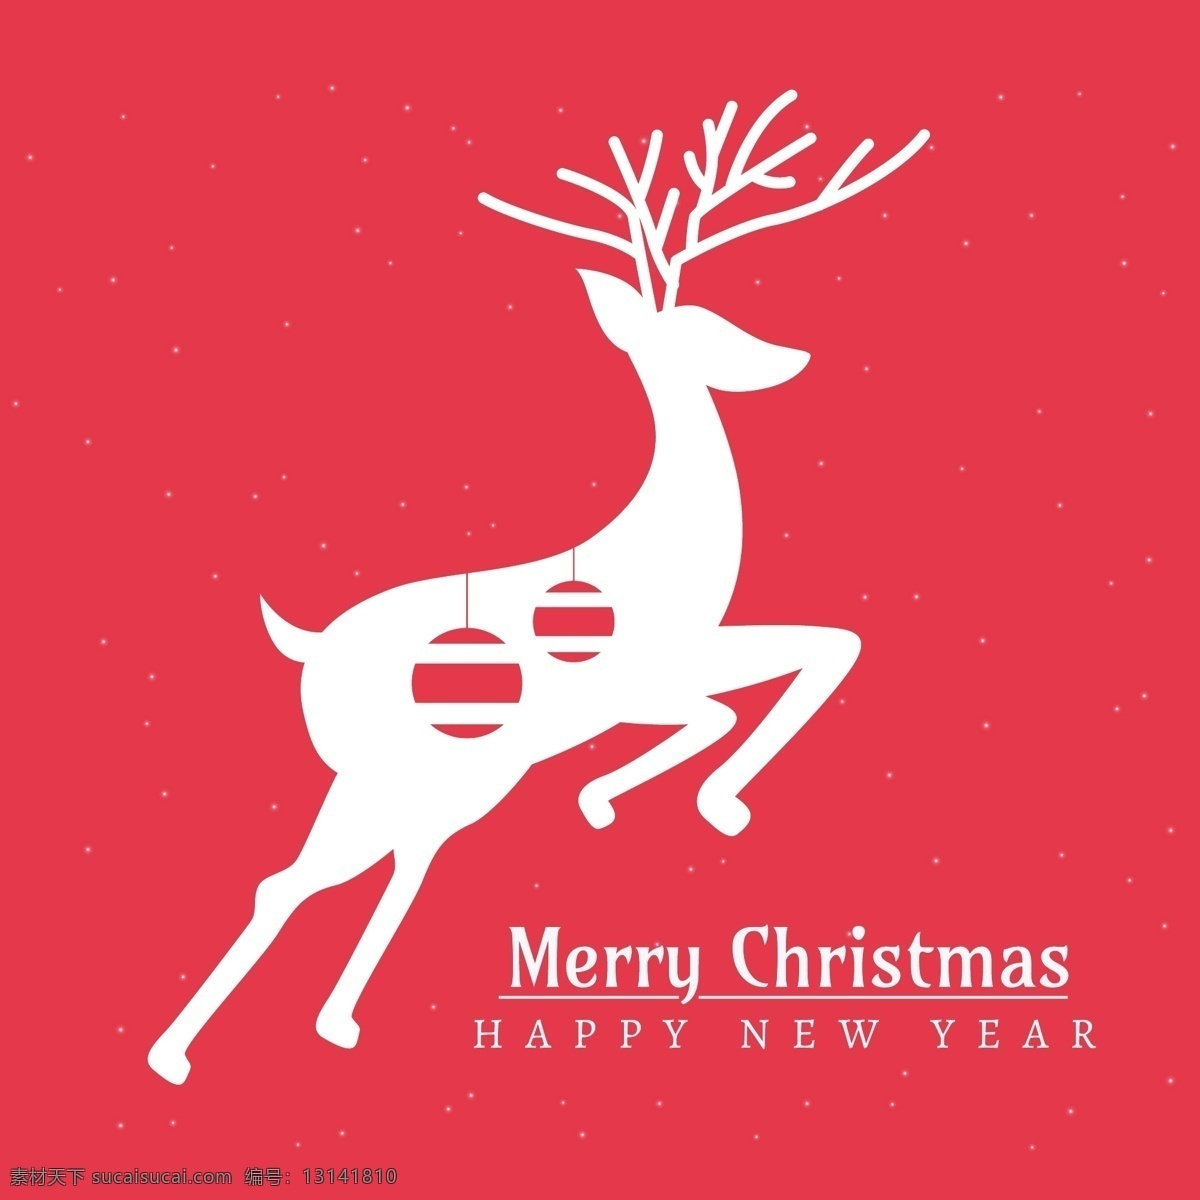 红色 圣诞贺卡 鹿 剪影 圣诞节 快乐 新的一年 雪花 圣诞快乐 冬季 圣诞 庆祝活动 新建 新年 庆祝 问候